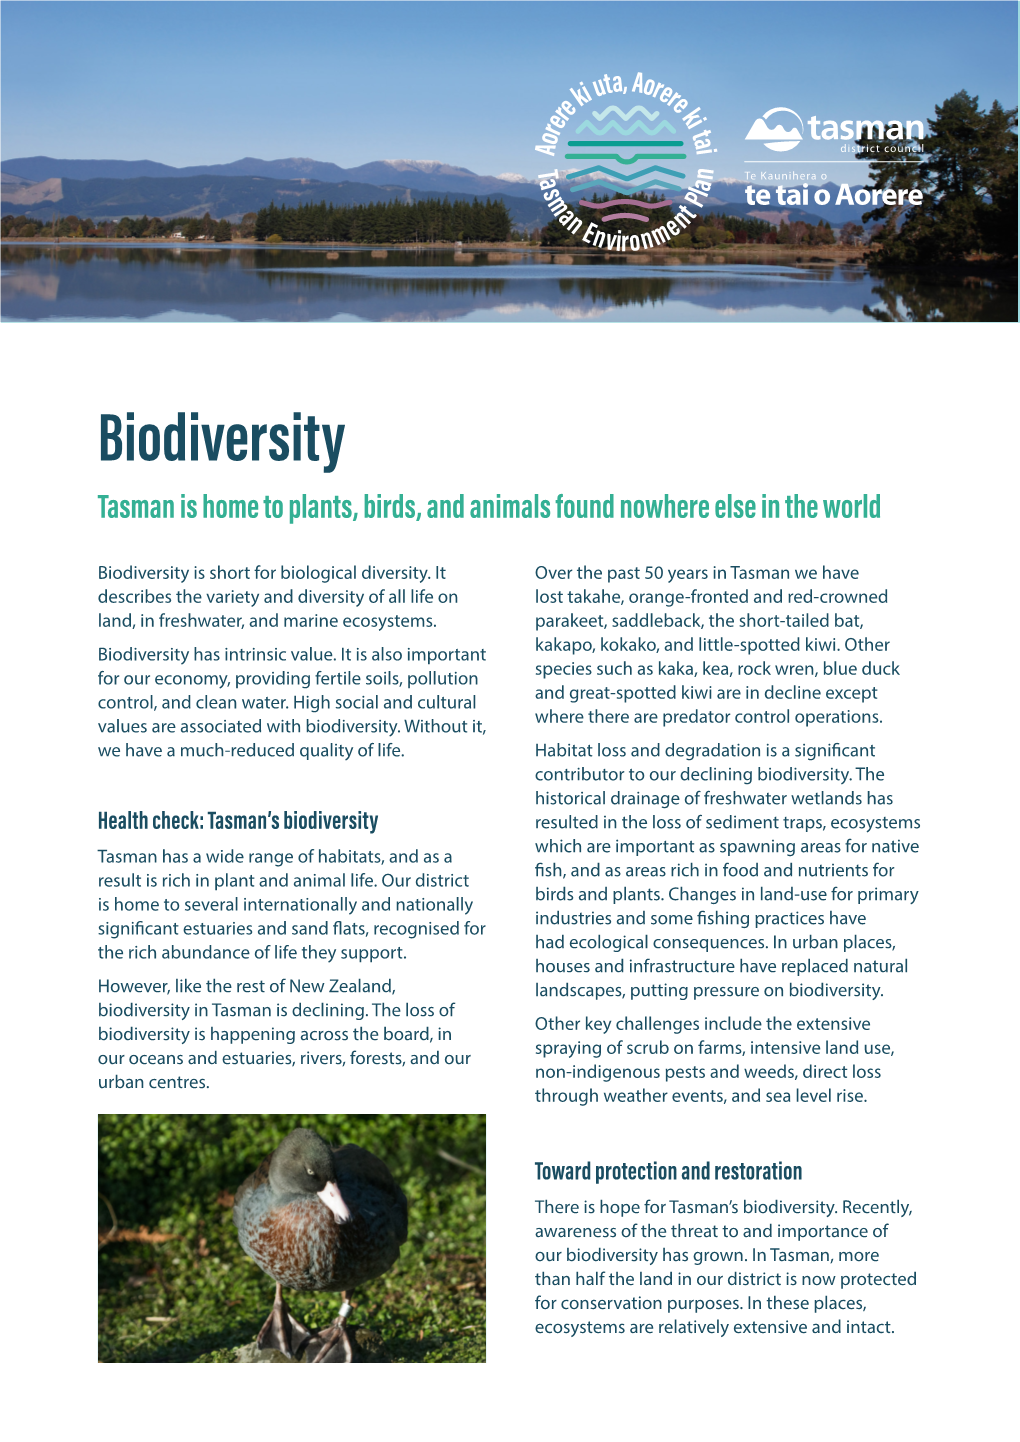 Biodiversity Fact Sheet